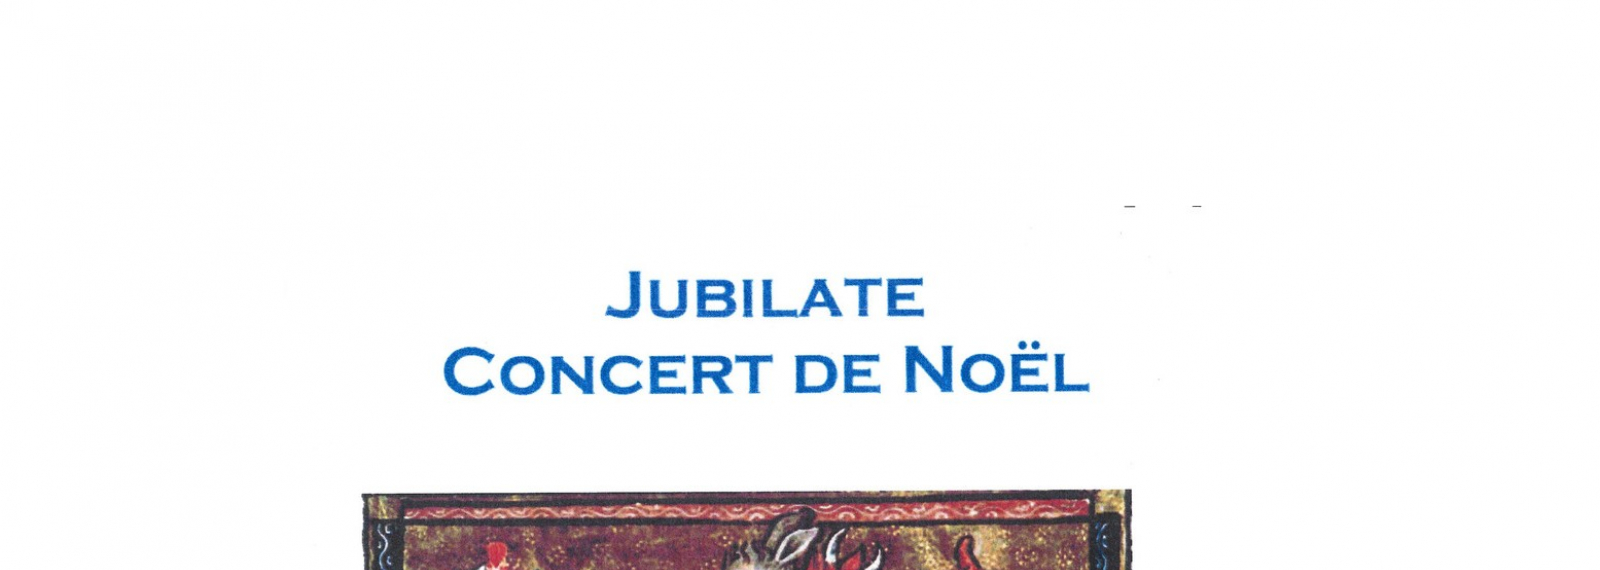 Jubilate - Concert de Noël